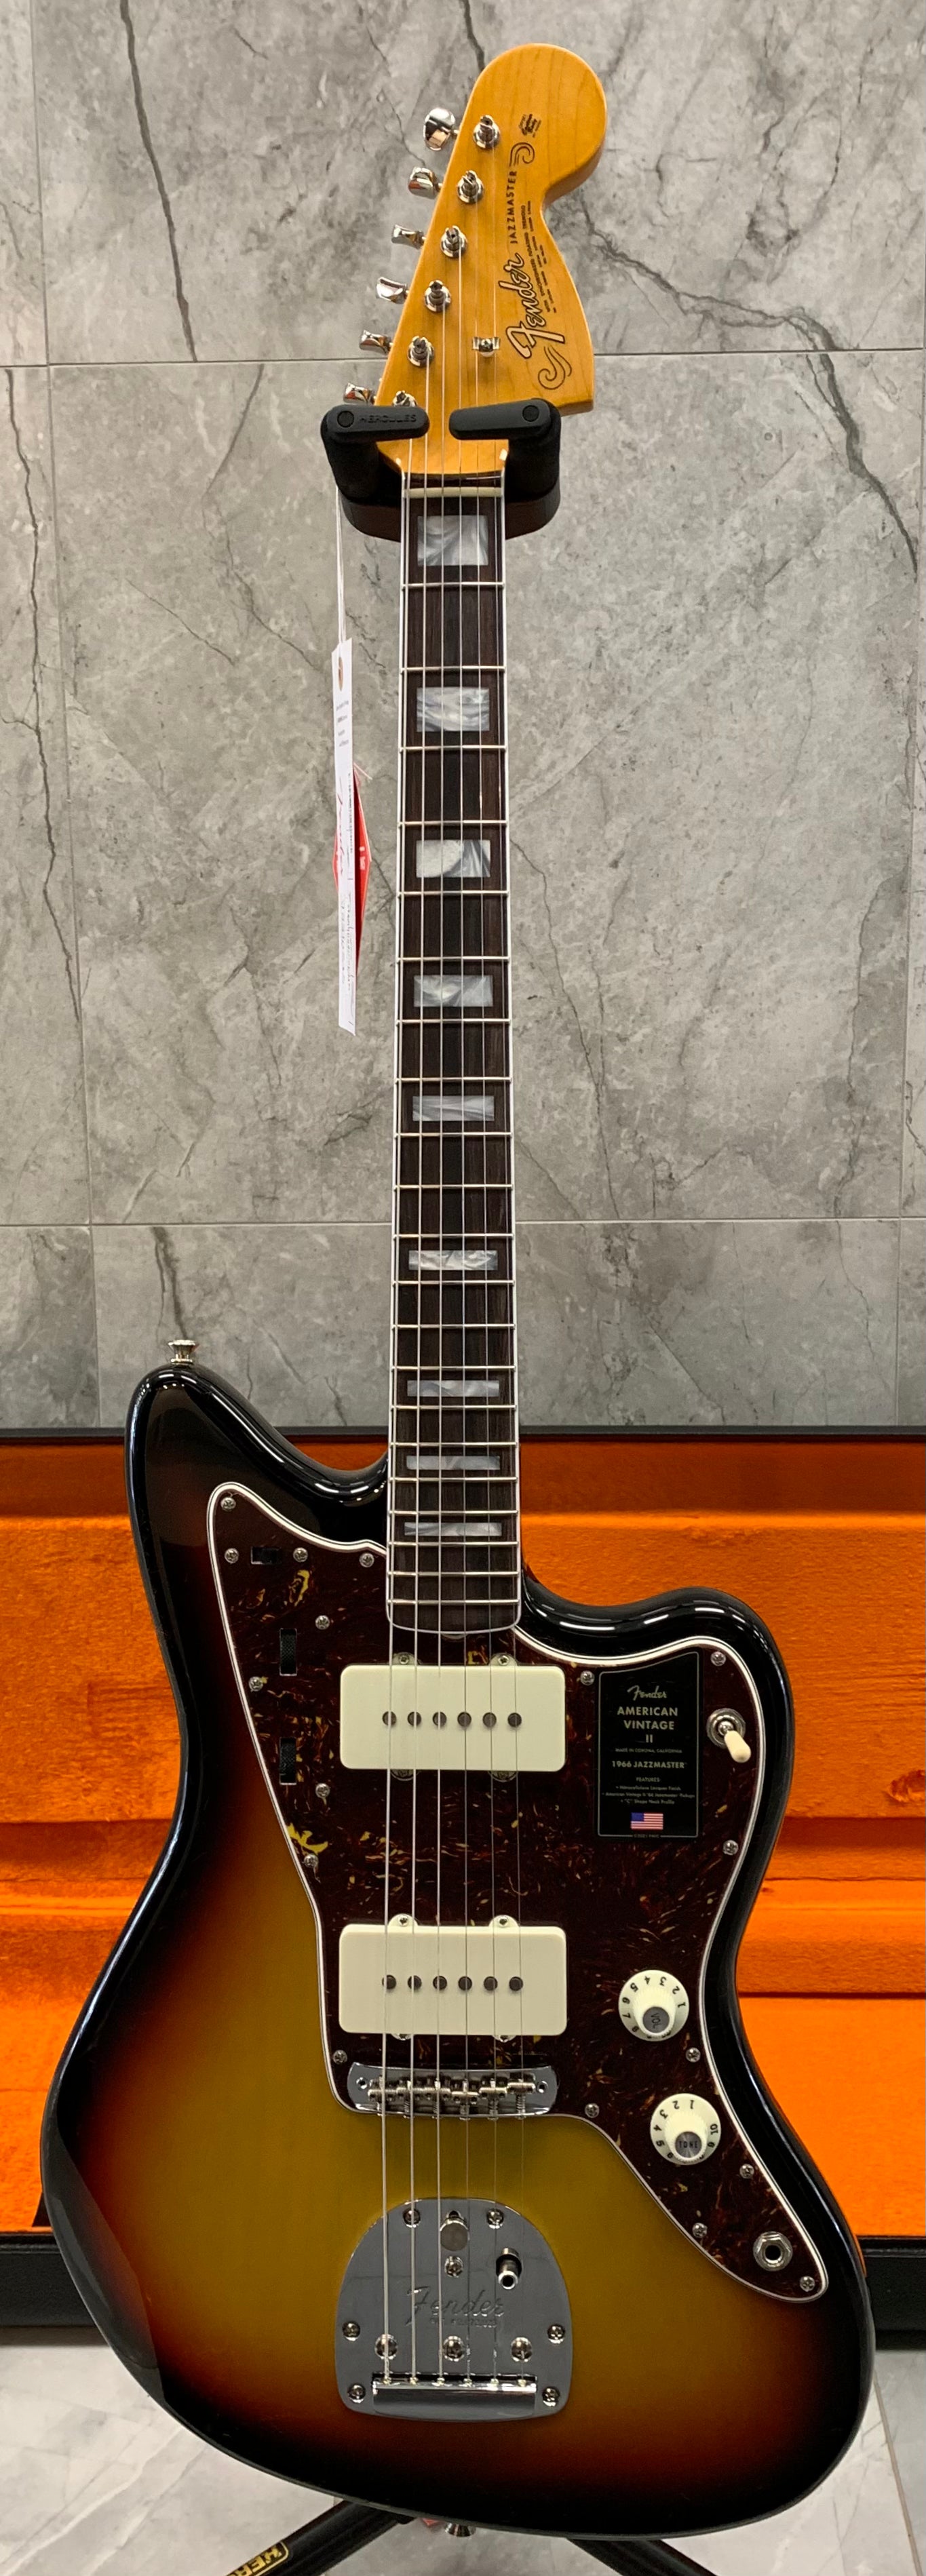 Fender American Vintage II 1966 Jazzmaster Rosewood Fingerboard, 3-Color  Sunburst 0110340800 SERIAL NUMBER V2210535 - 8.0 LBS